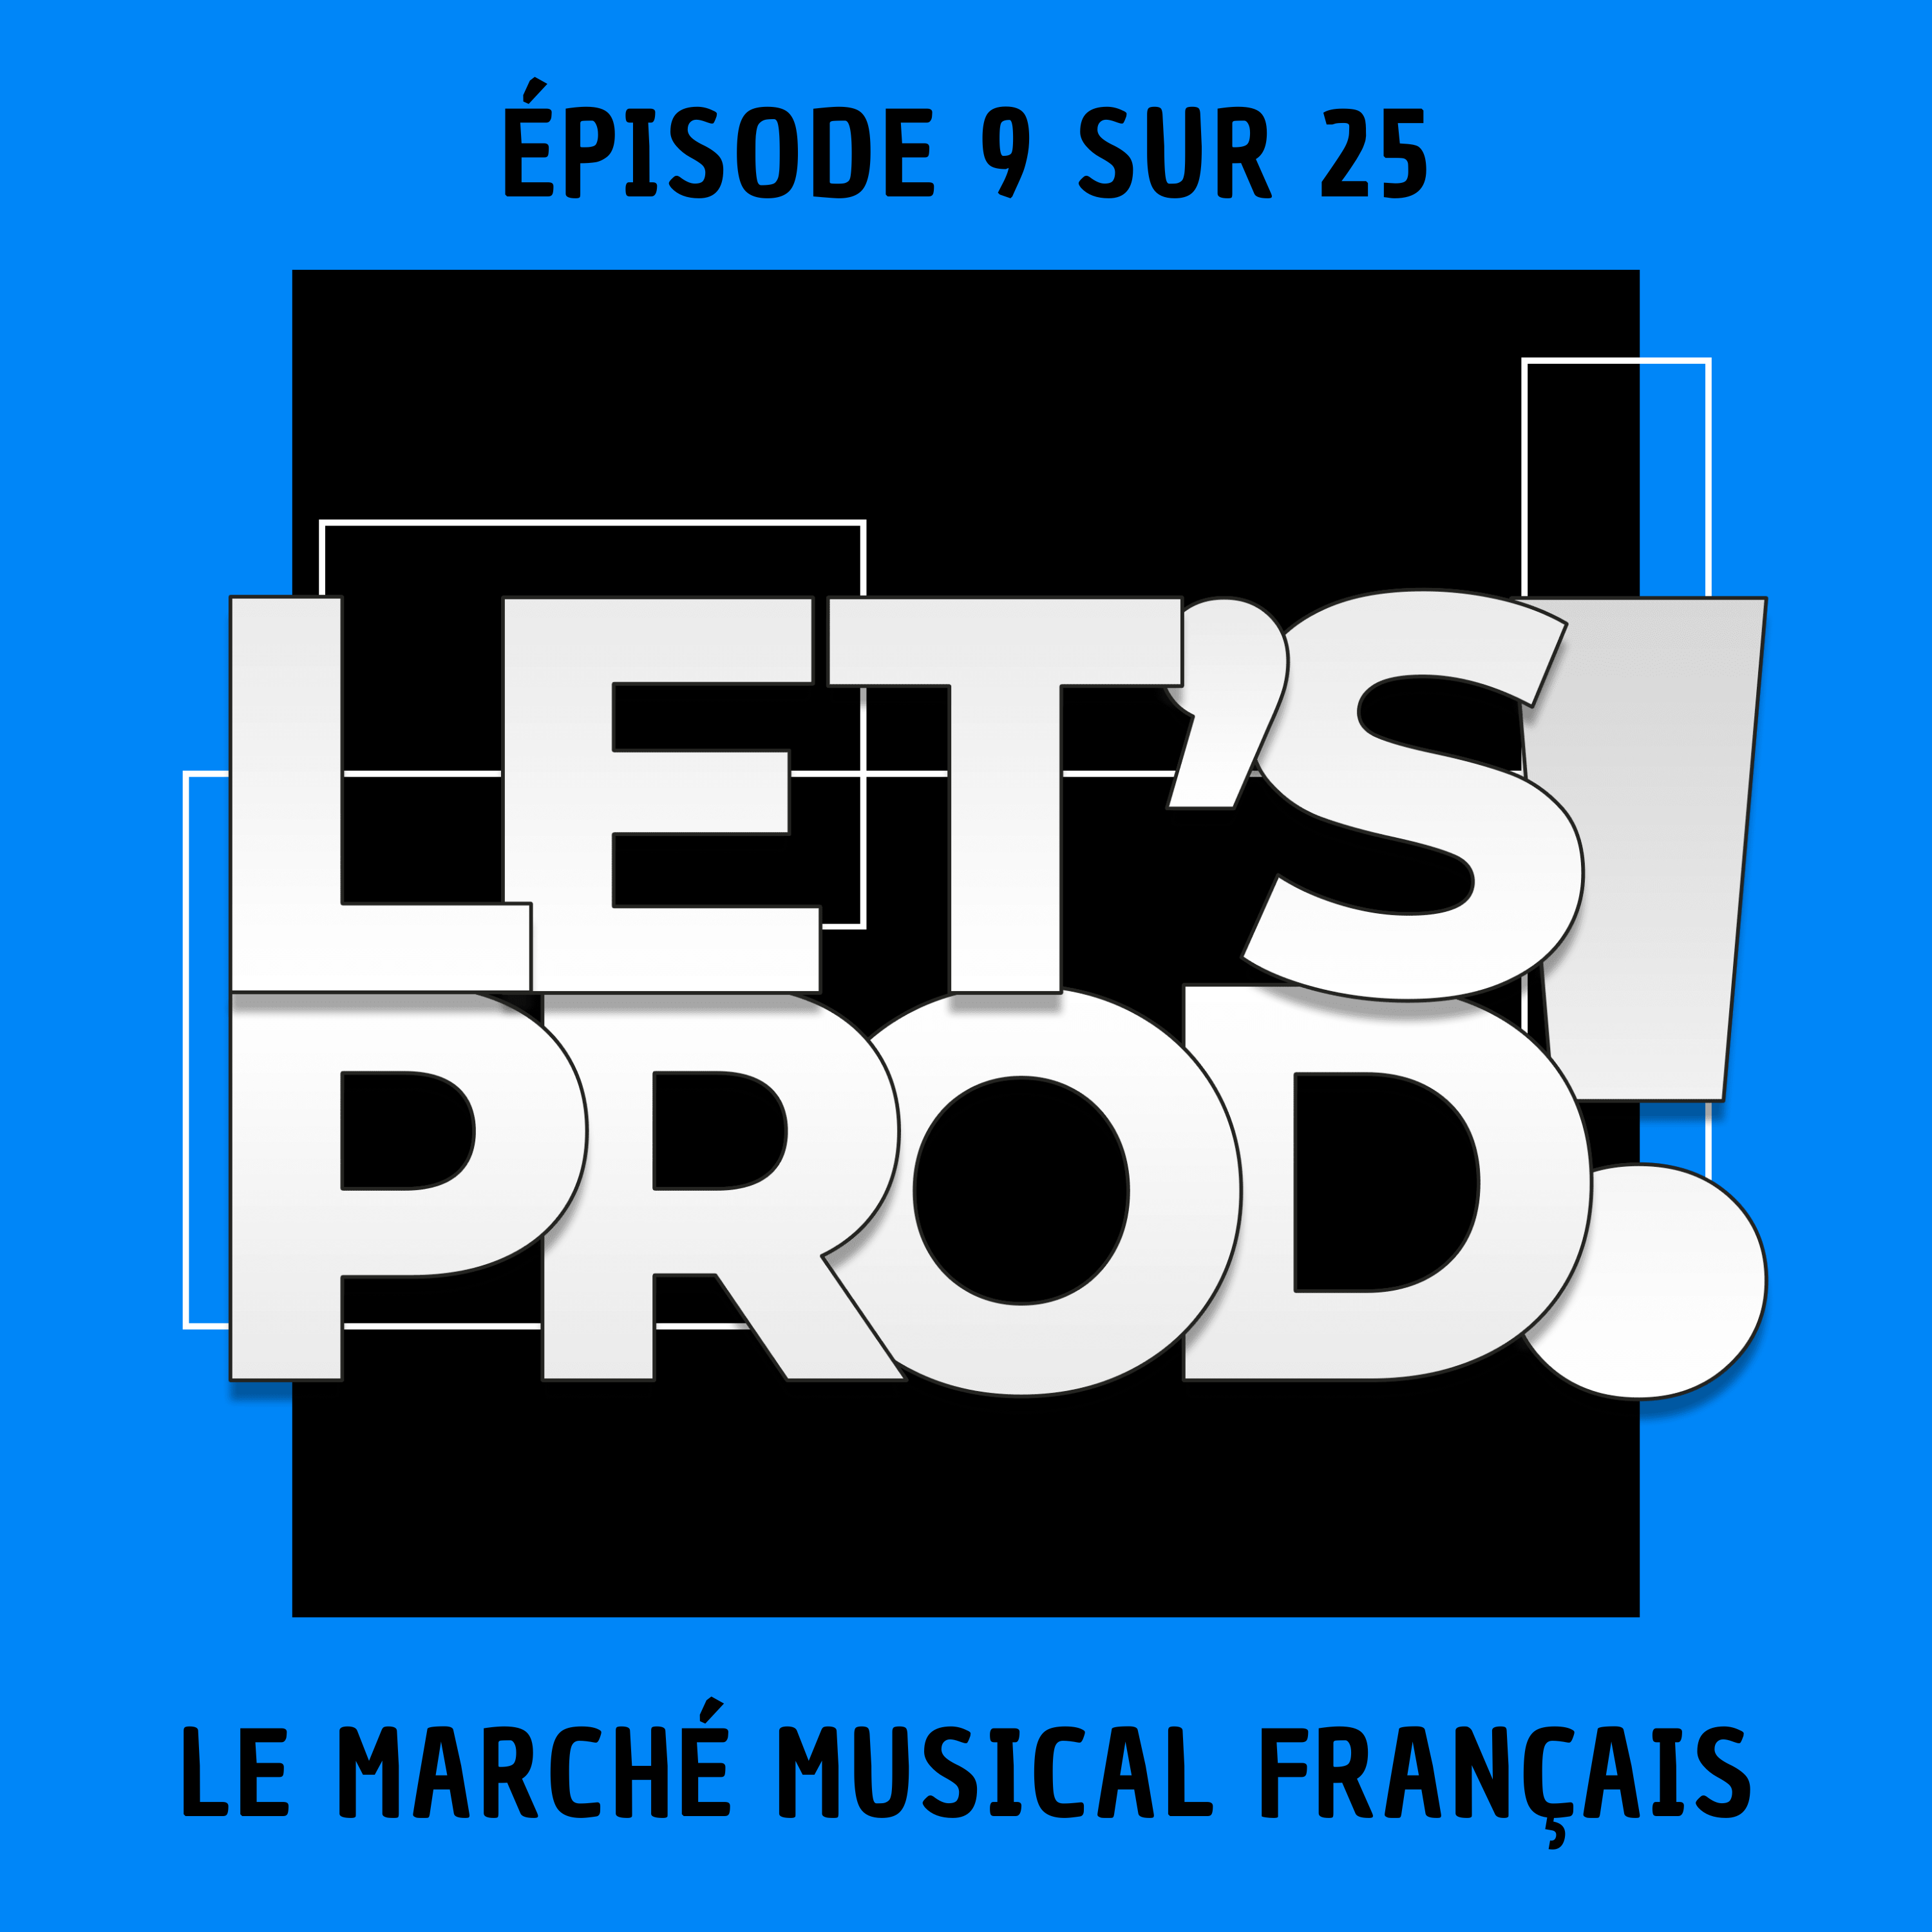 Le marché musical français (Épisode 9 sur 25)